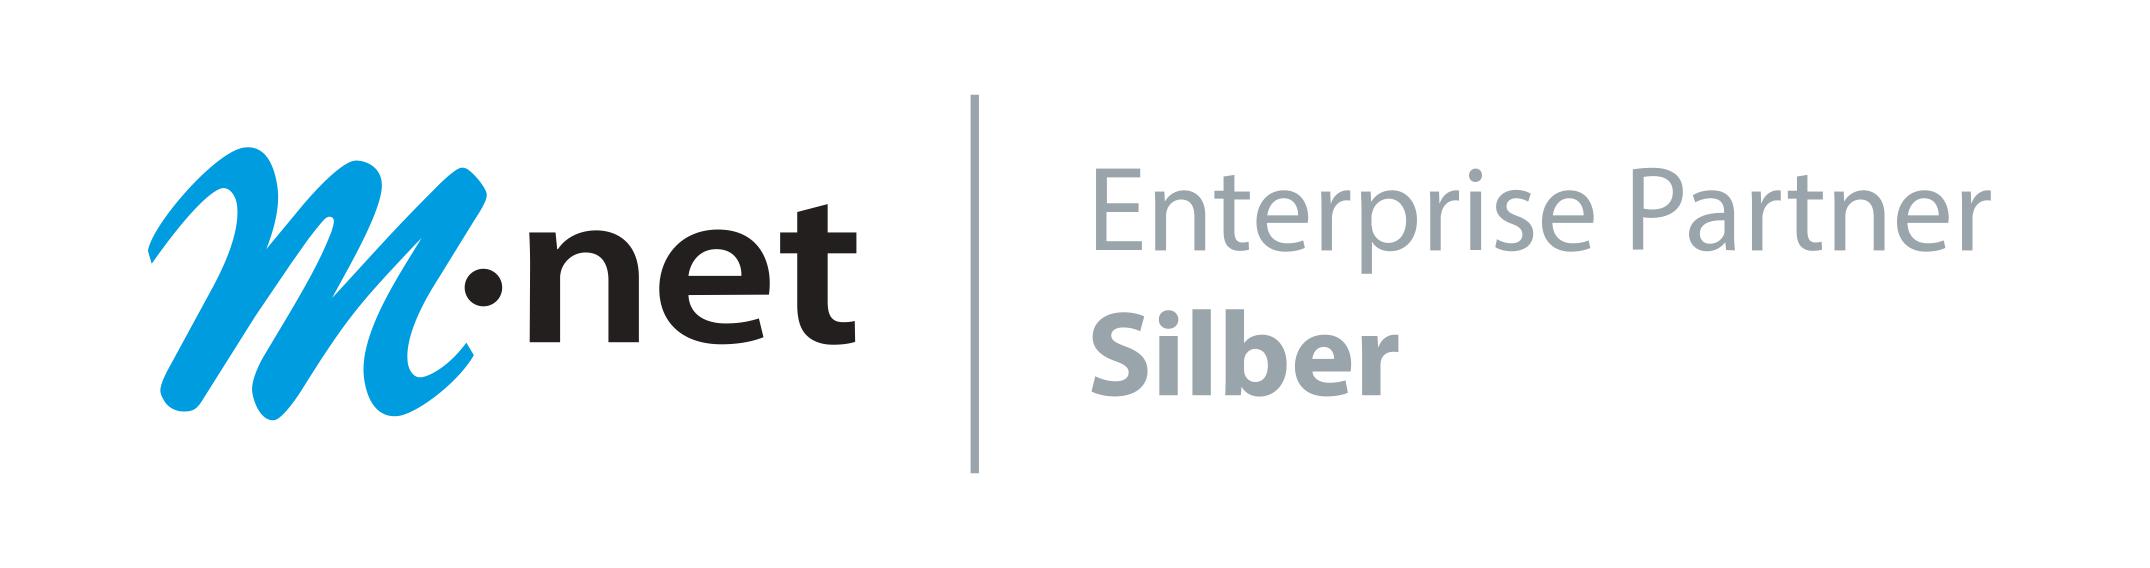 Enterprise Partner Silber